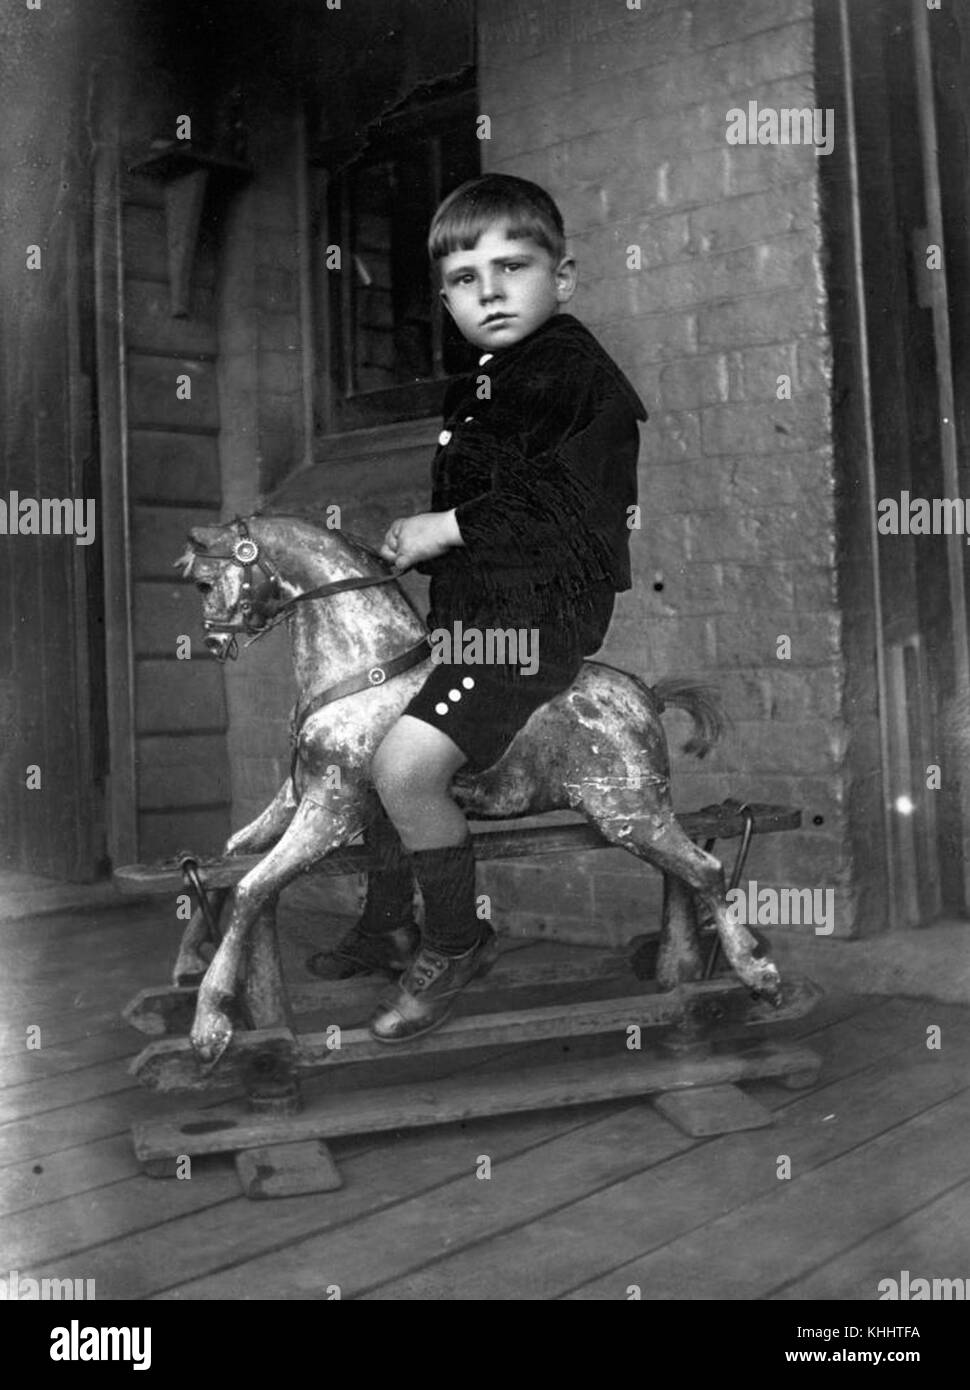 2 167807 Junge auf einem Schaukelpferd, 1900-1910 Stockfotografie - Alamy